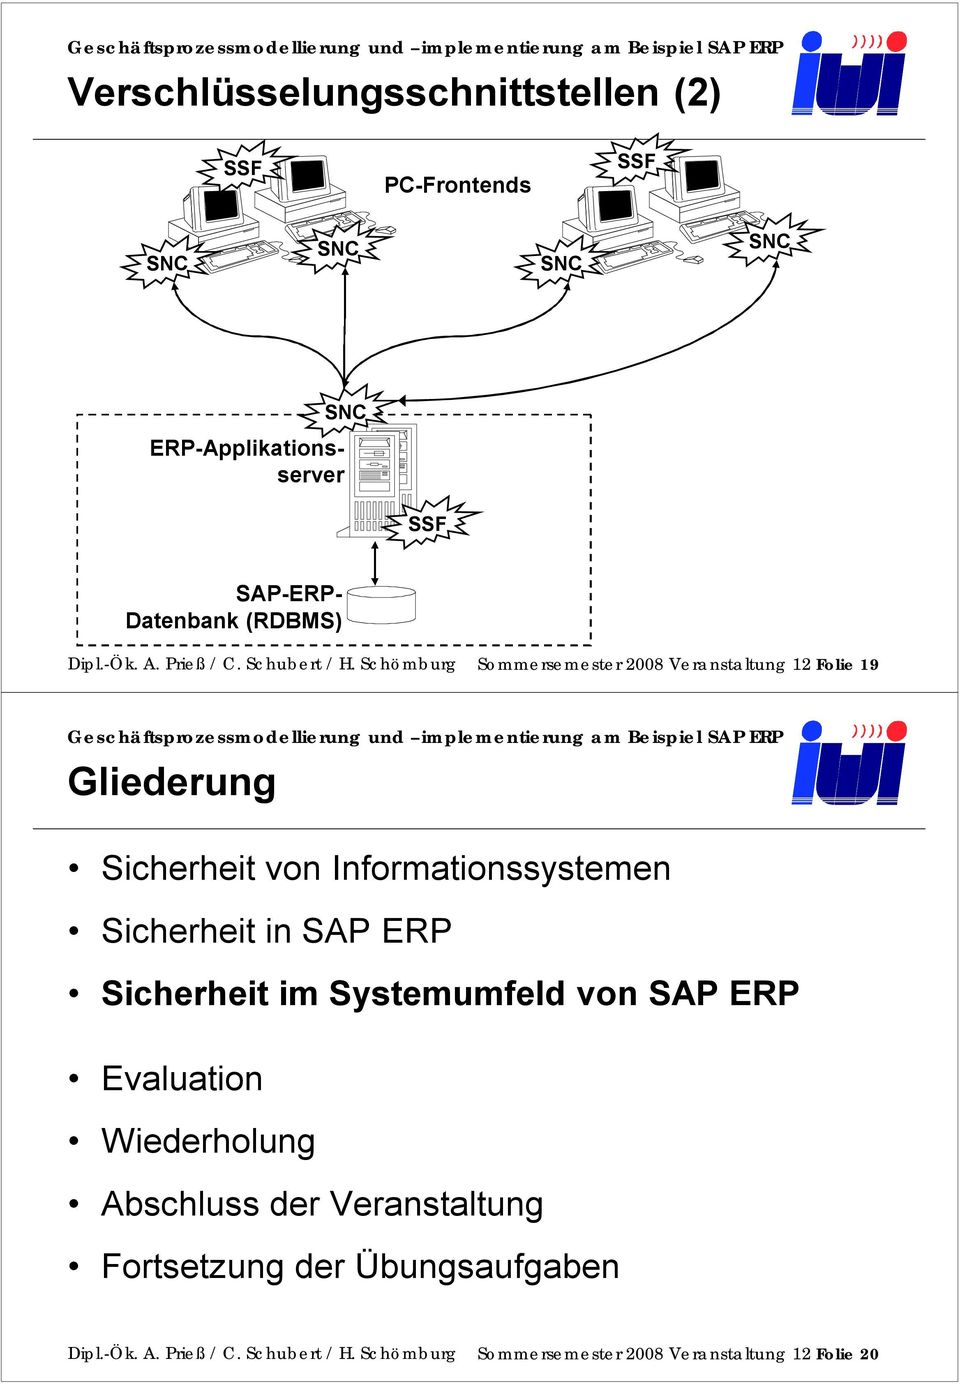 Schömburg Sommersemester 2008 Veranstaltung 12 Folie 19 Gliederung Sicherheit von Informationssystemen Sicherheit in SAP ERP